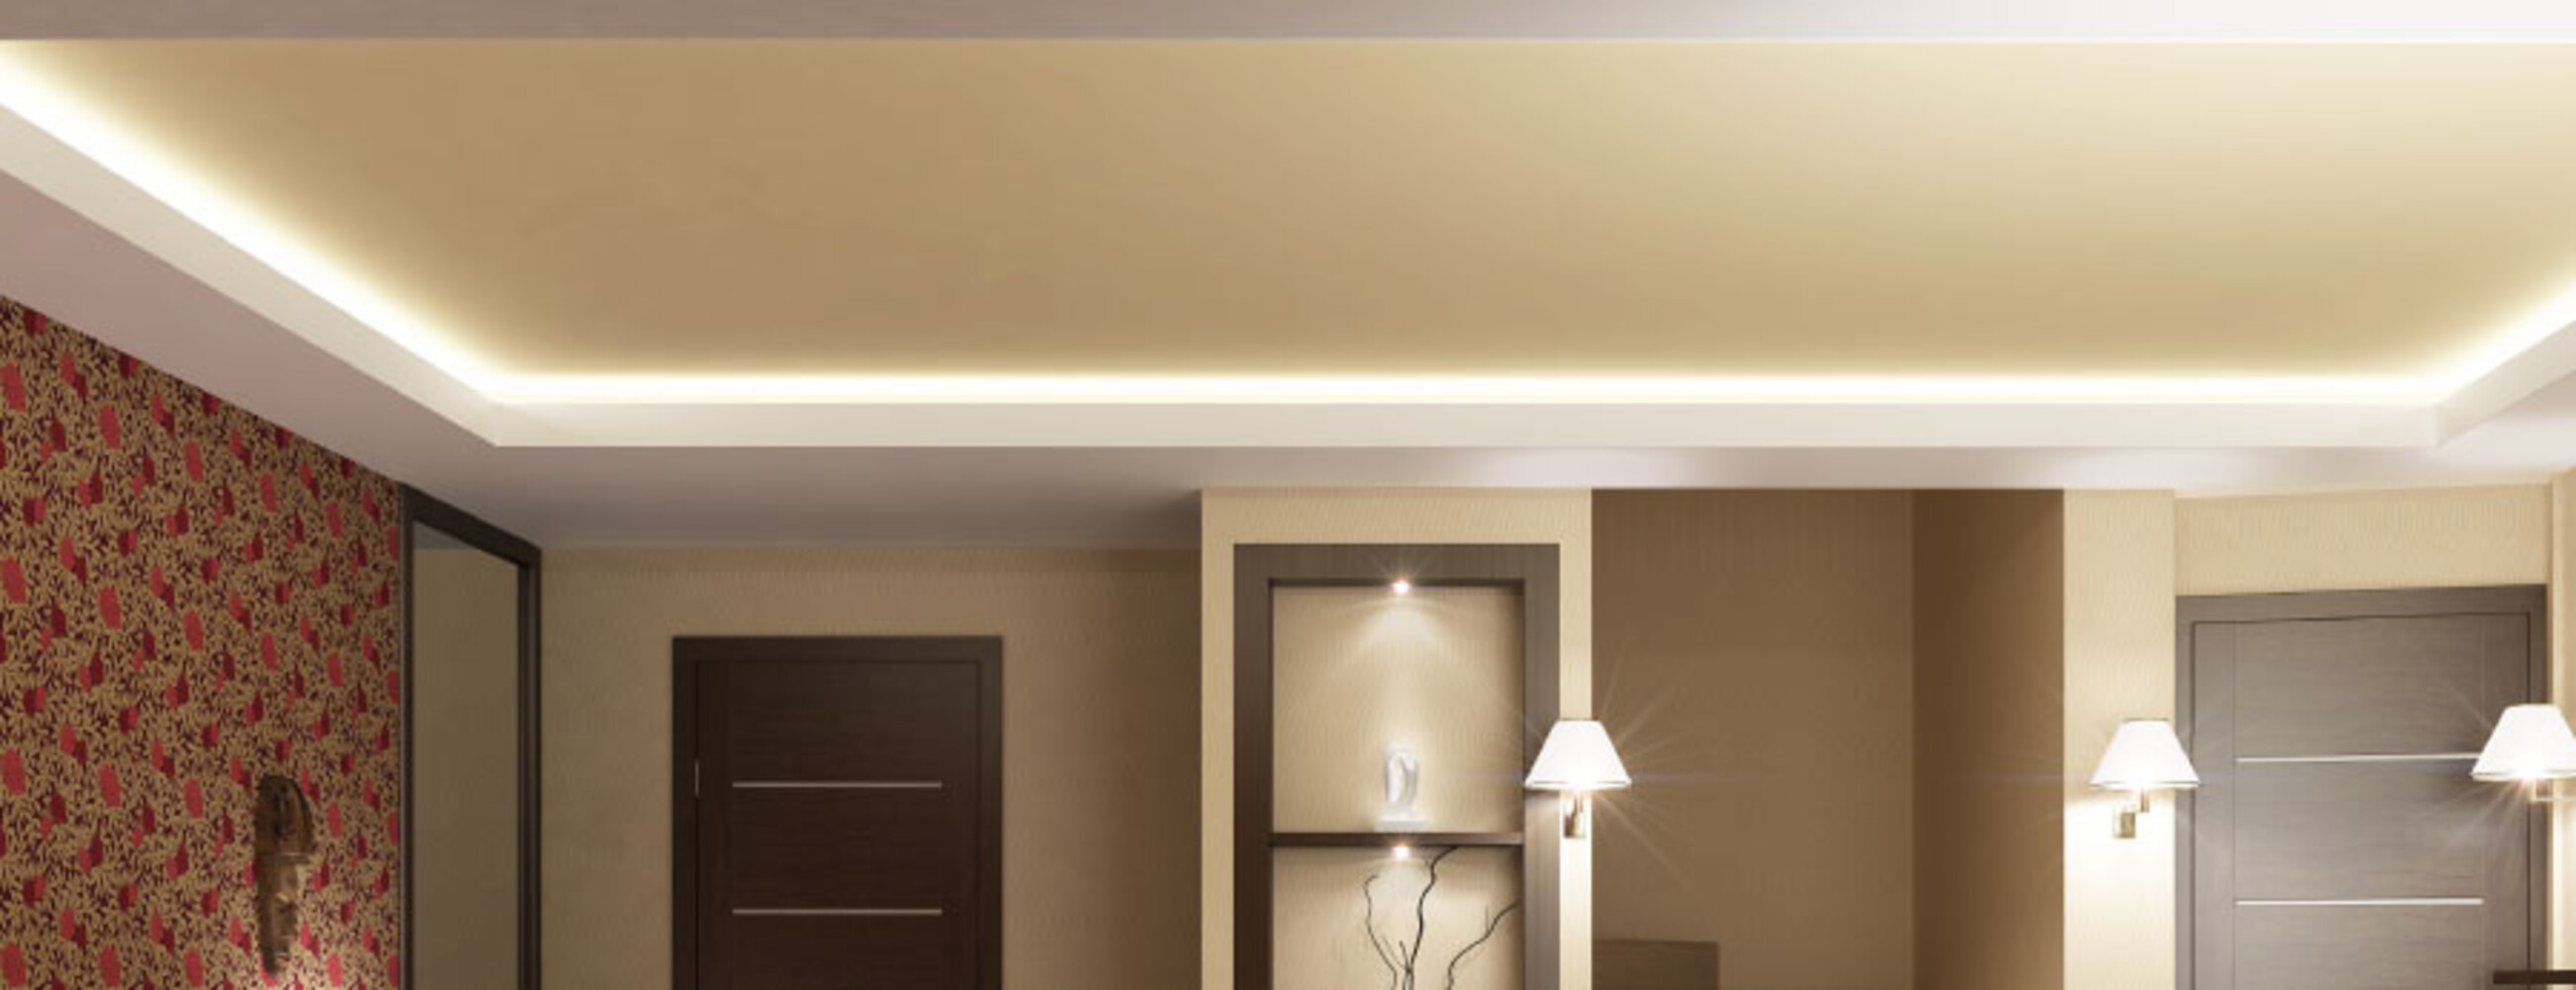 Premium warmweißer LED Streifen von LED Universum illuminiert gekonnt jeden Raum